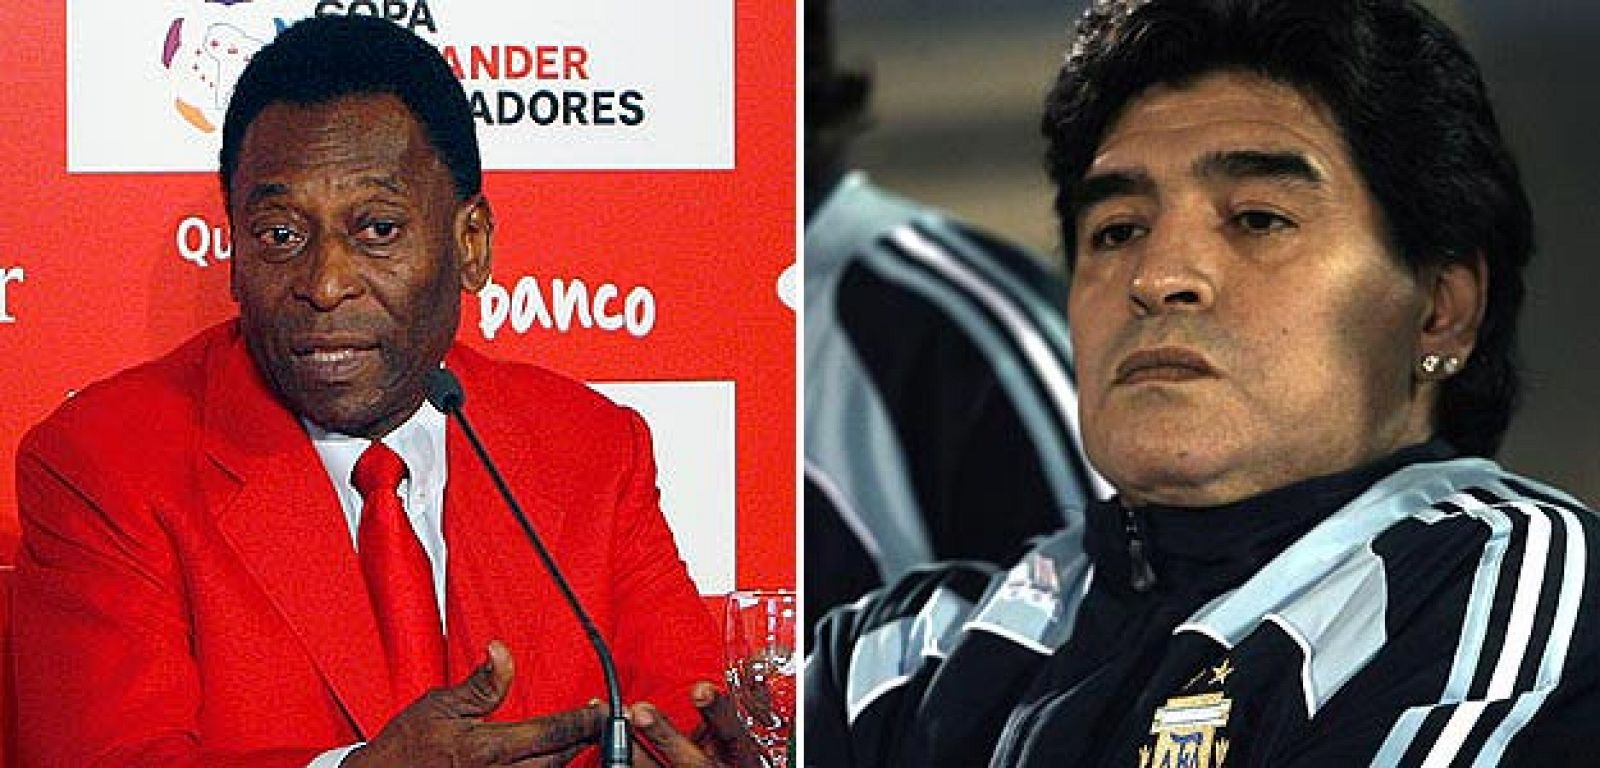 Nuevo episodio de la confrontación entre Pelé y Maradona